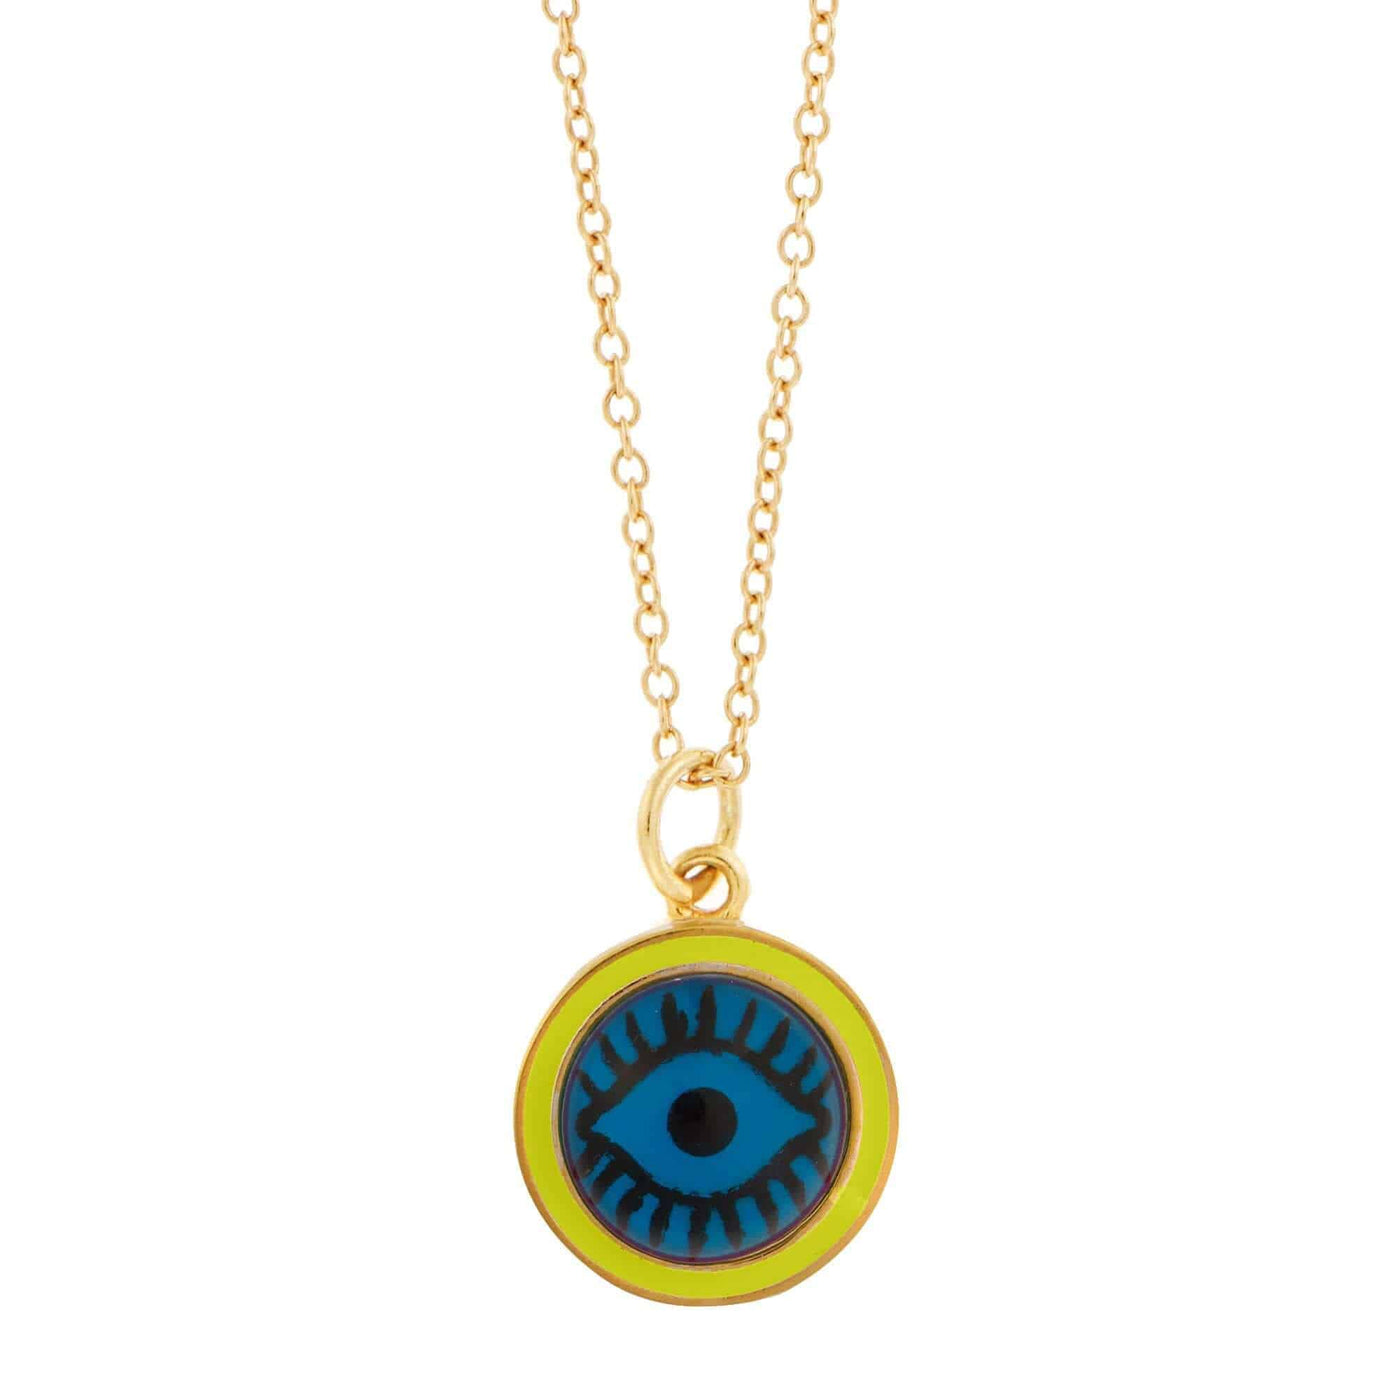 Blue Eye Enamel Pendant - Eye M by Ileana Makri